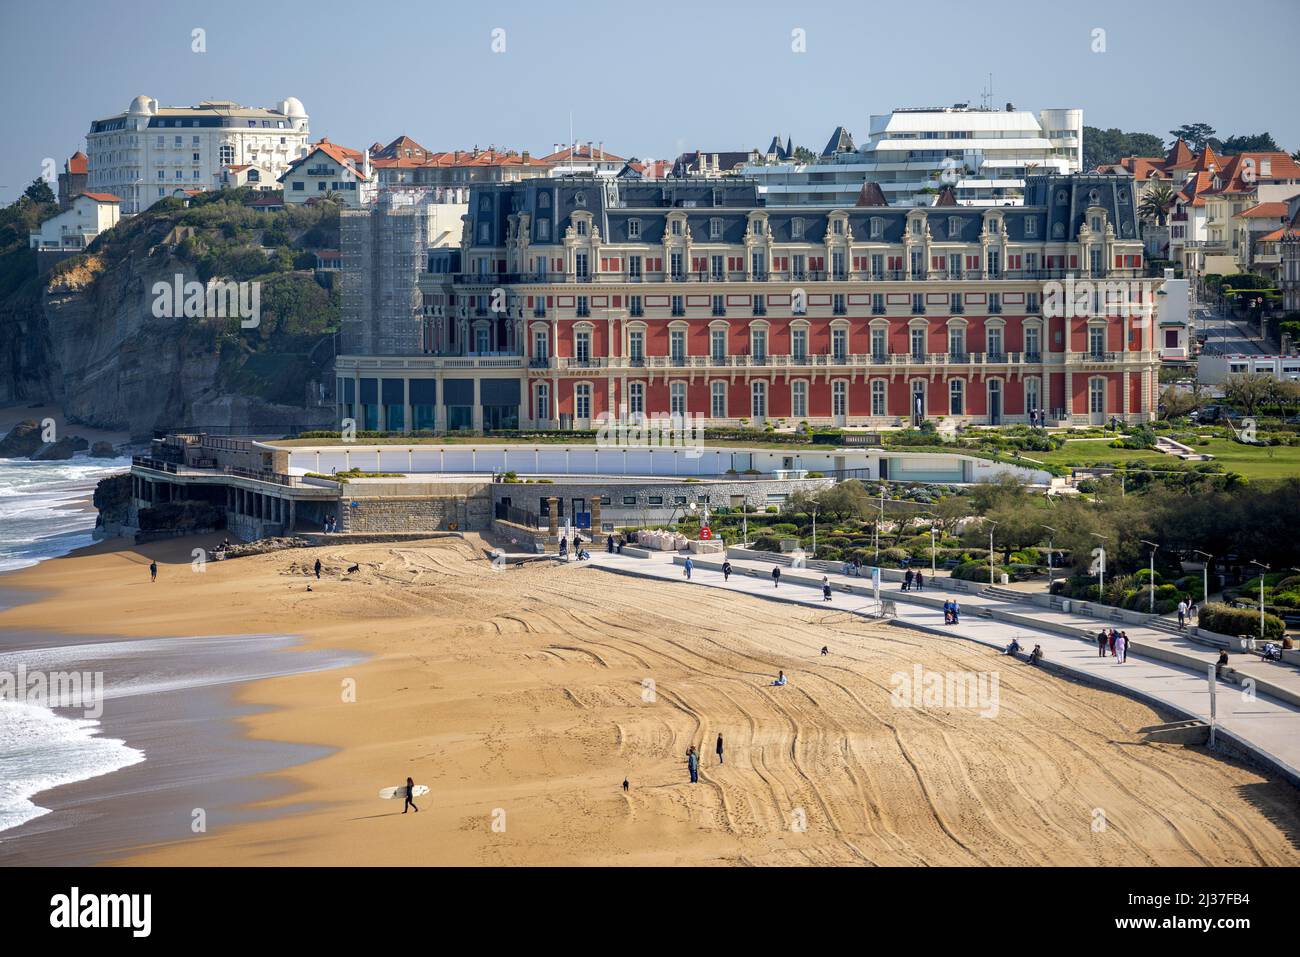 Das Hôtel du Palais (ursprünglich die Villa Eugénie) und der große Strand von Biarritz (atlantische Pyrenäen - Frankreich). Stockfoto